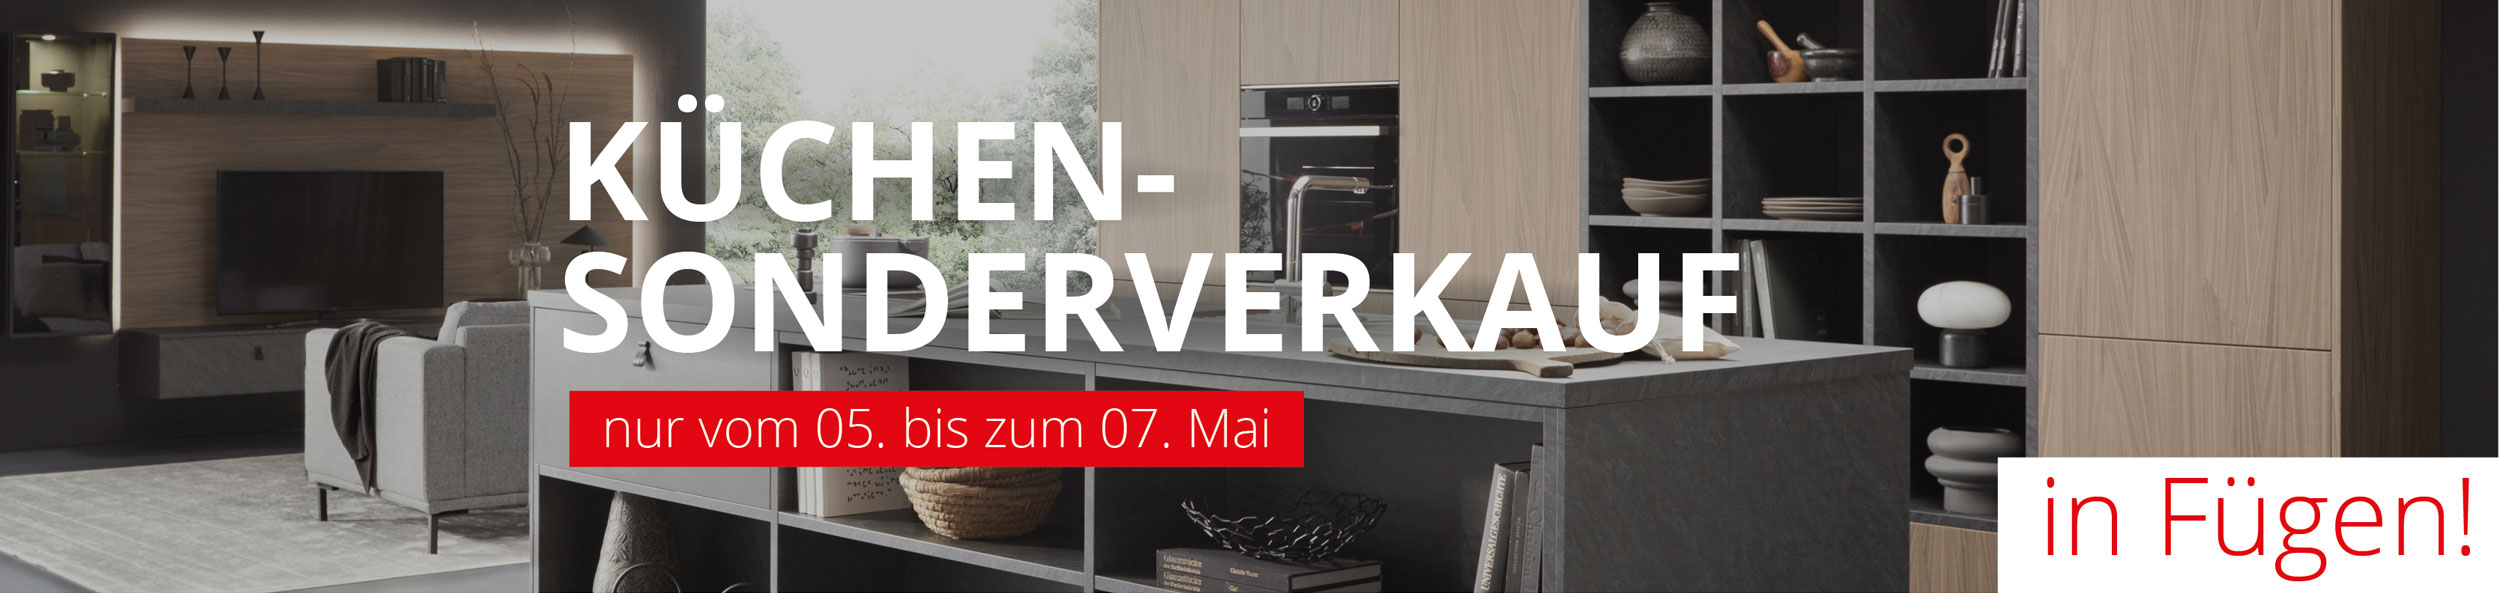 3 Tage exklusiver Küchen-Sonderverkauf bei Wetscher Max in Fügen